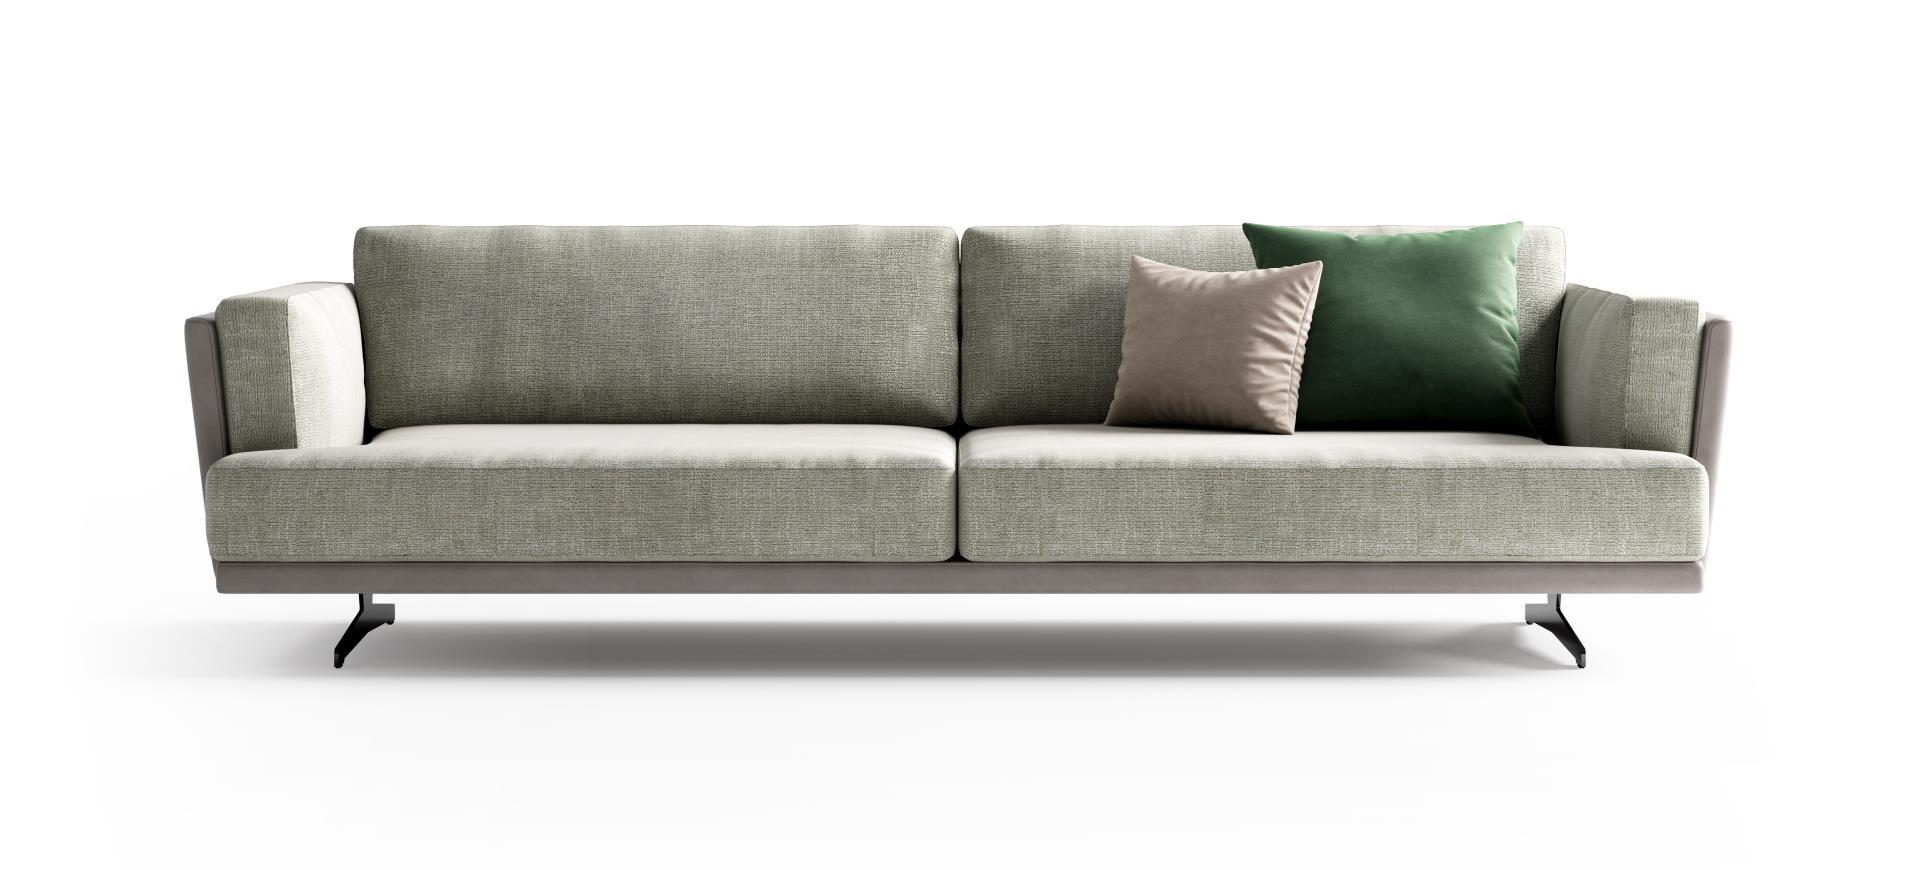 Italian Fabric & Leather Sofa 284 cm